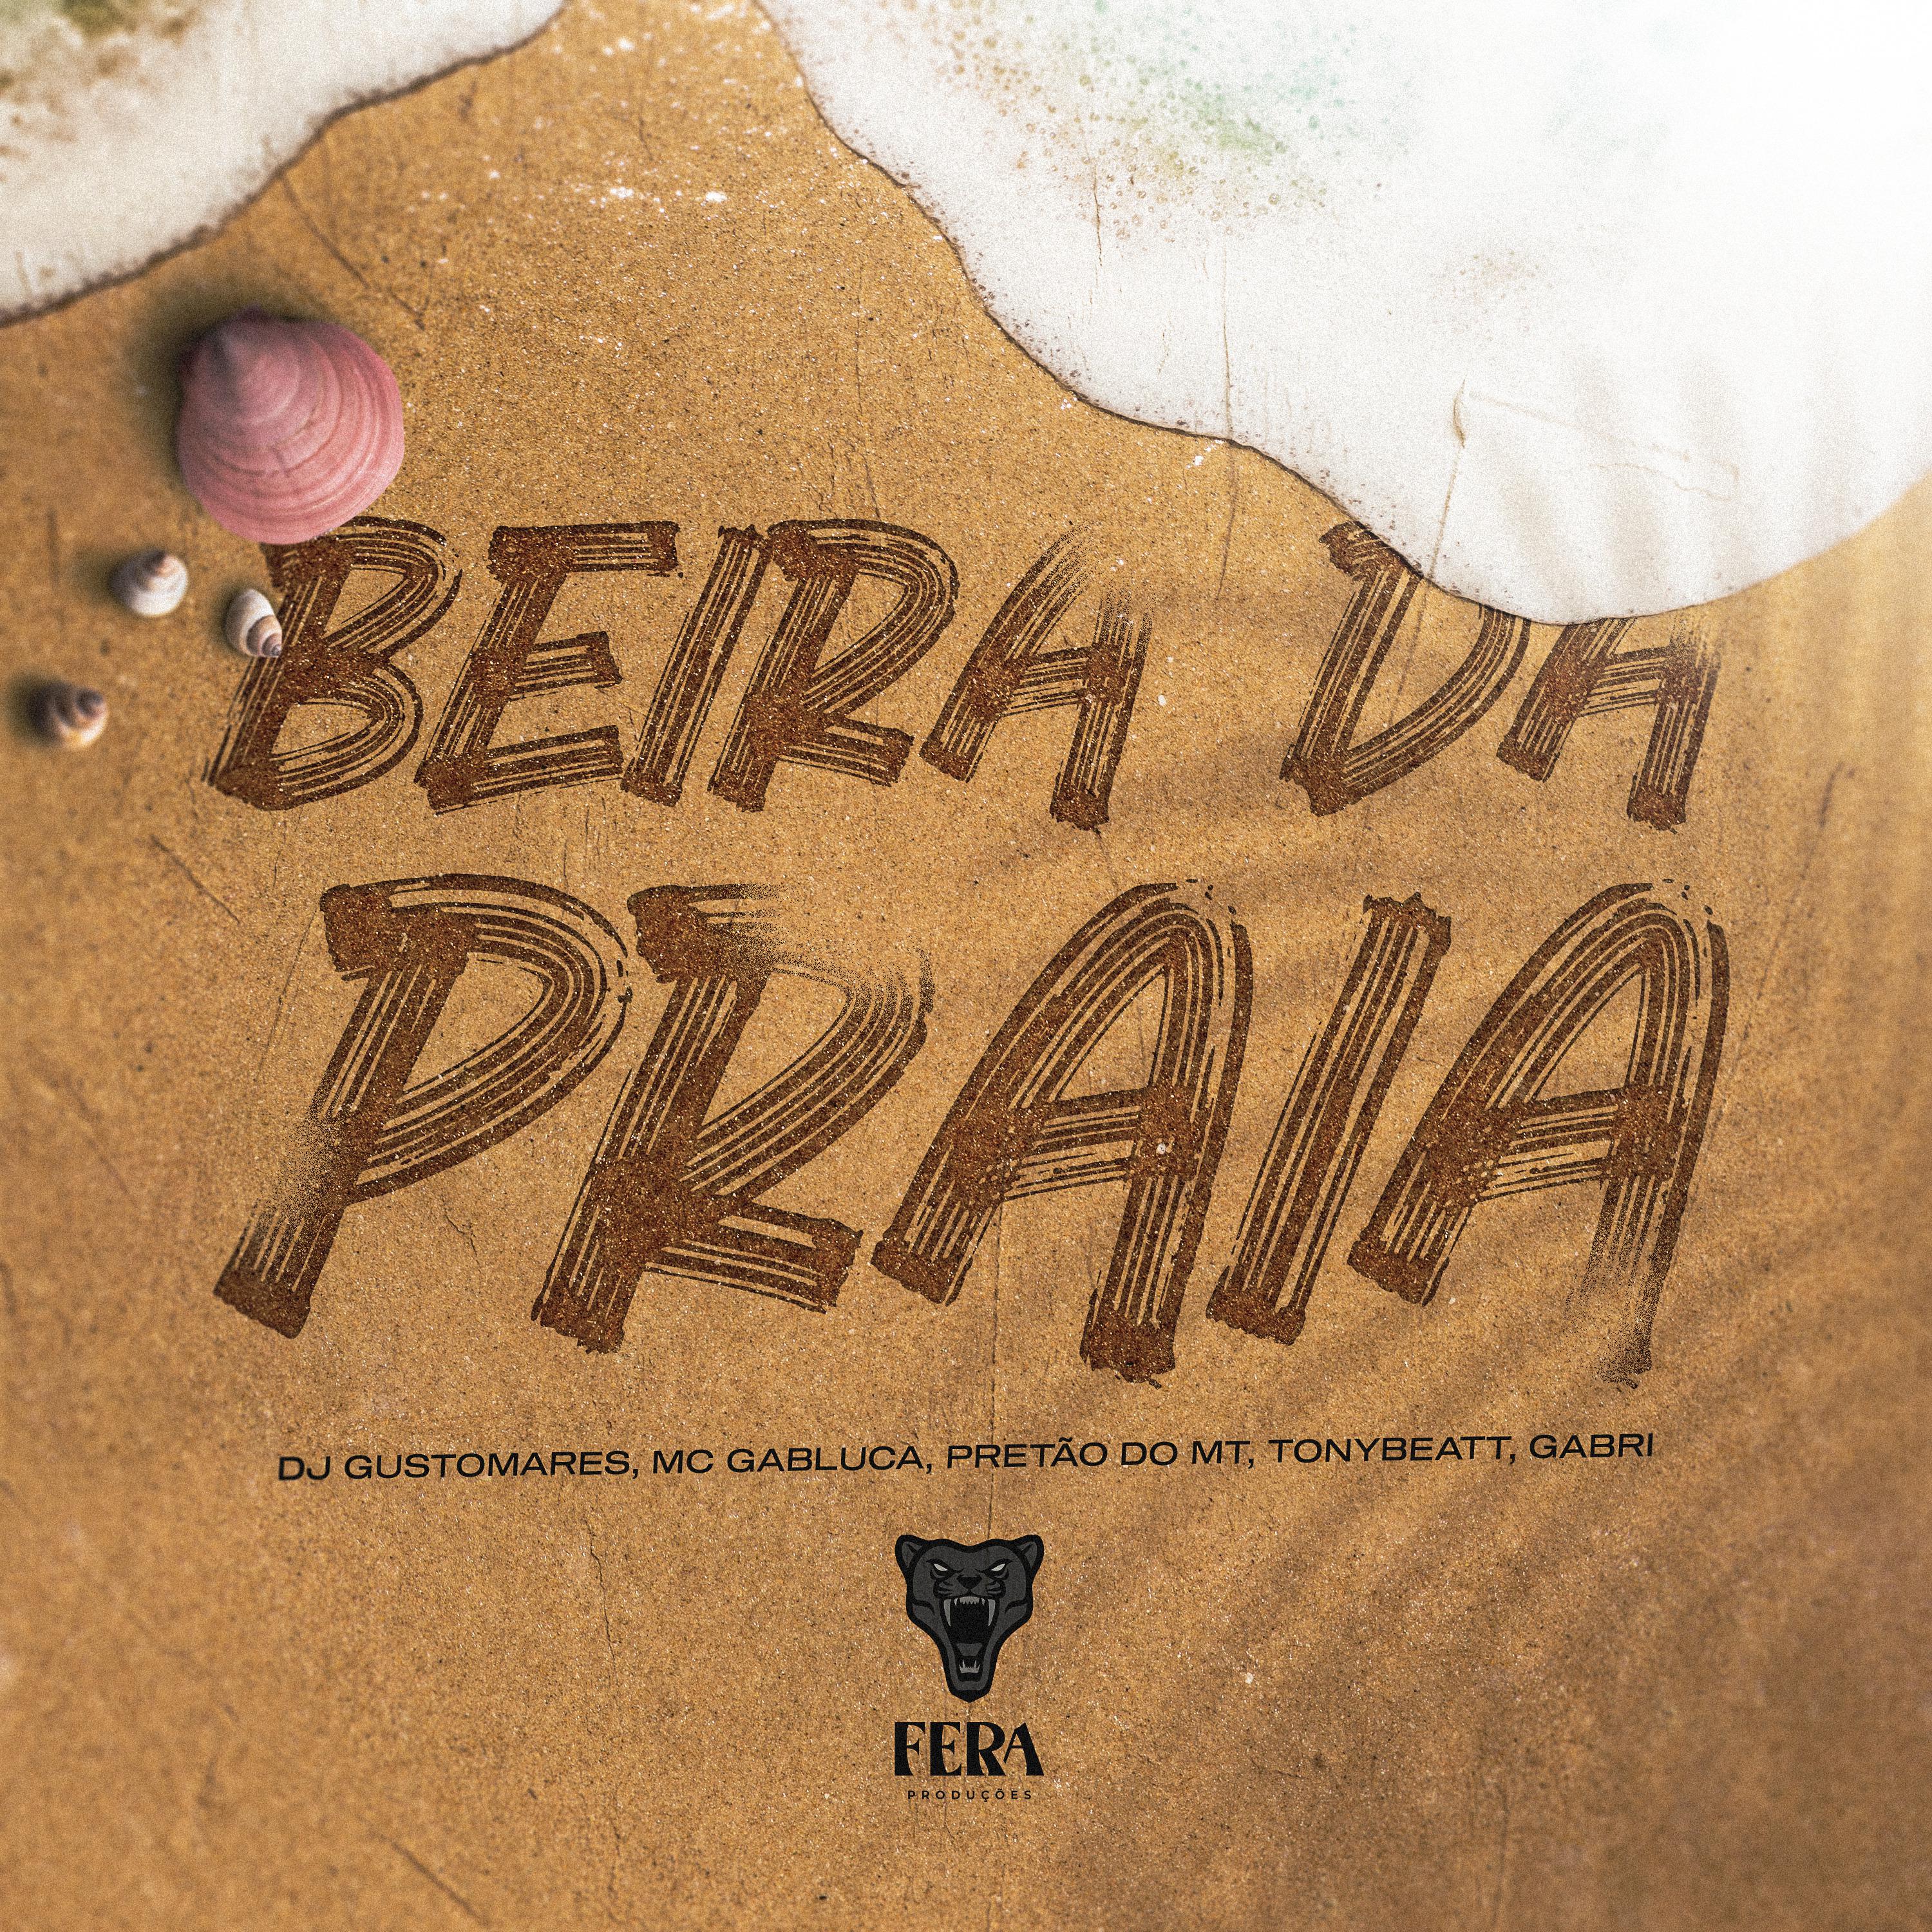 Постер альбома Beira da Praia